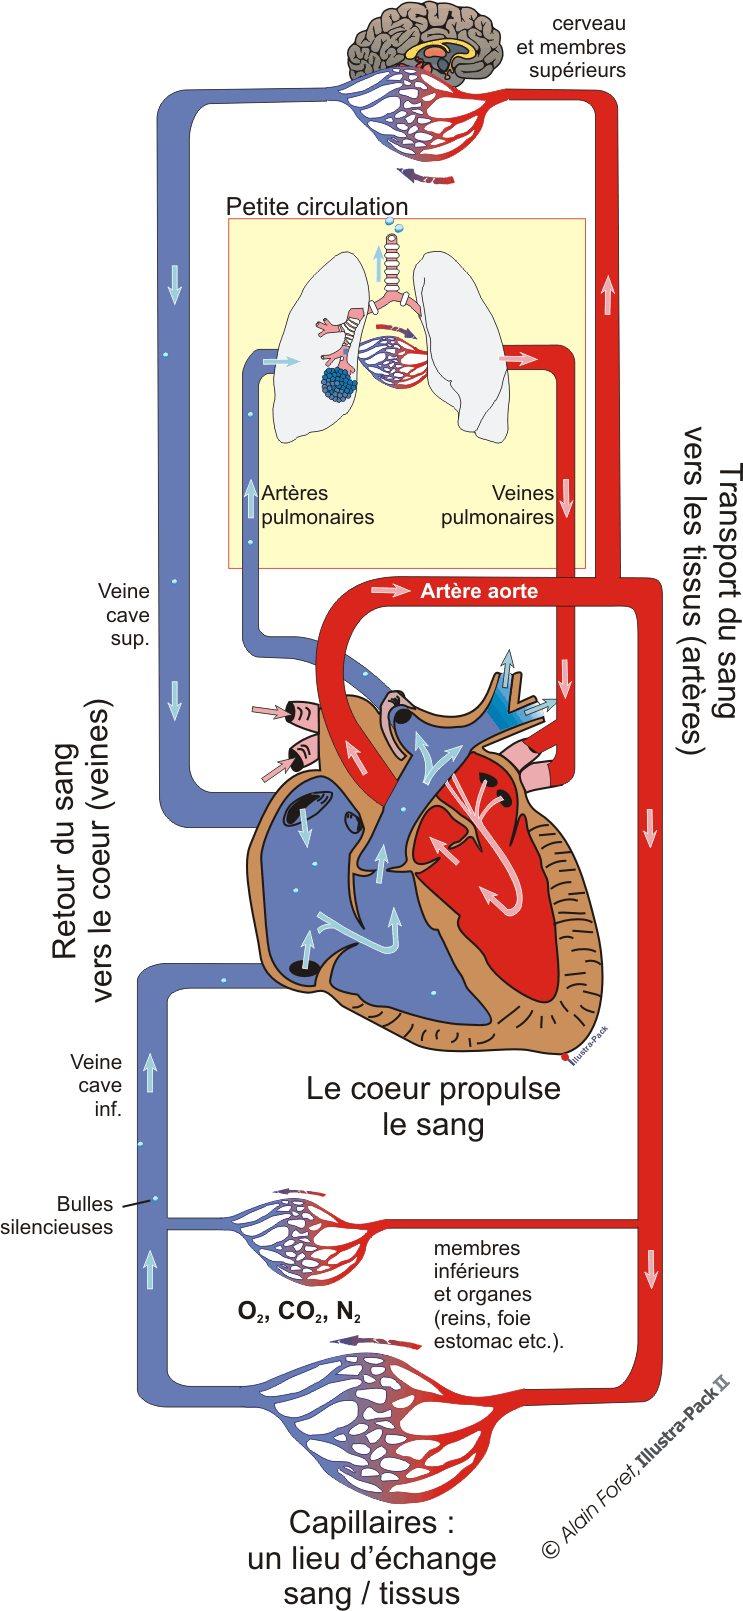 Artère Aorte transport du sang riche en CO² du cœur vers les poumons l aide des Artères Pulmonaires Petite circulation Petite circulation transport du sang riche en O² des poumons vers le cœur à l